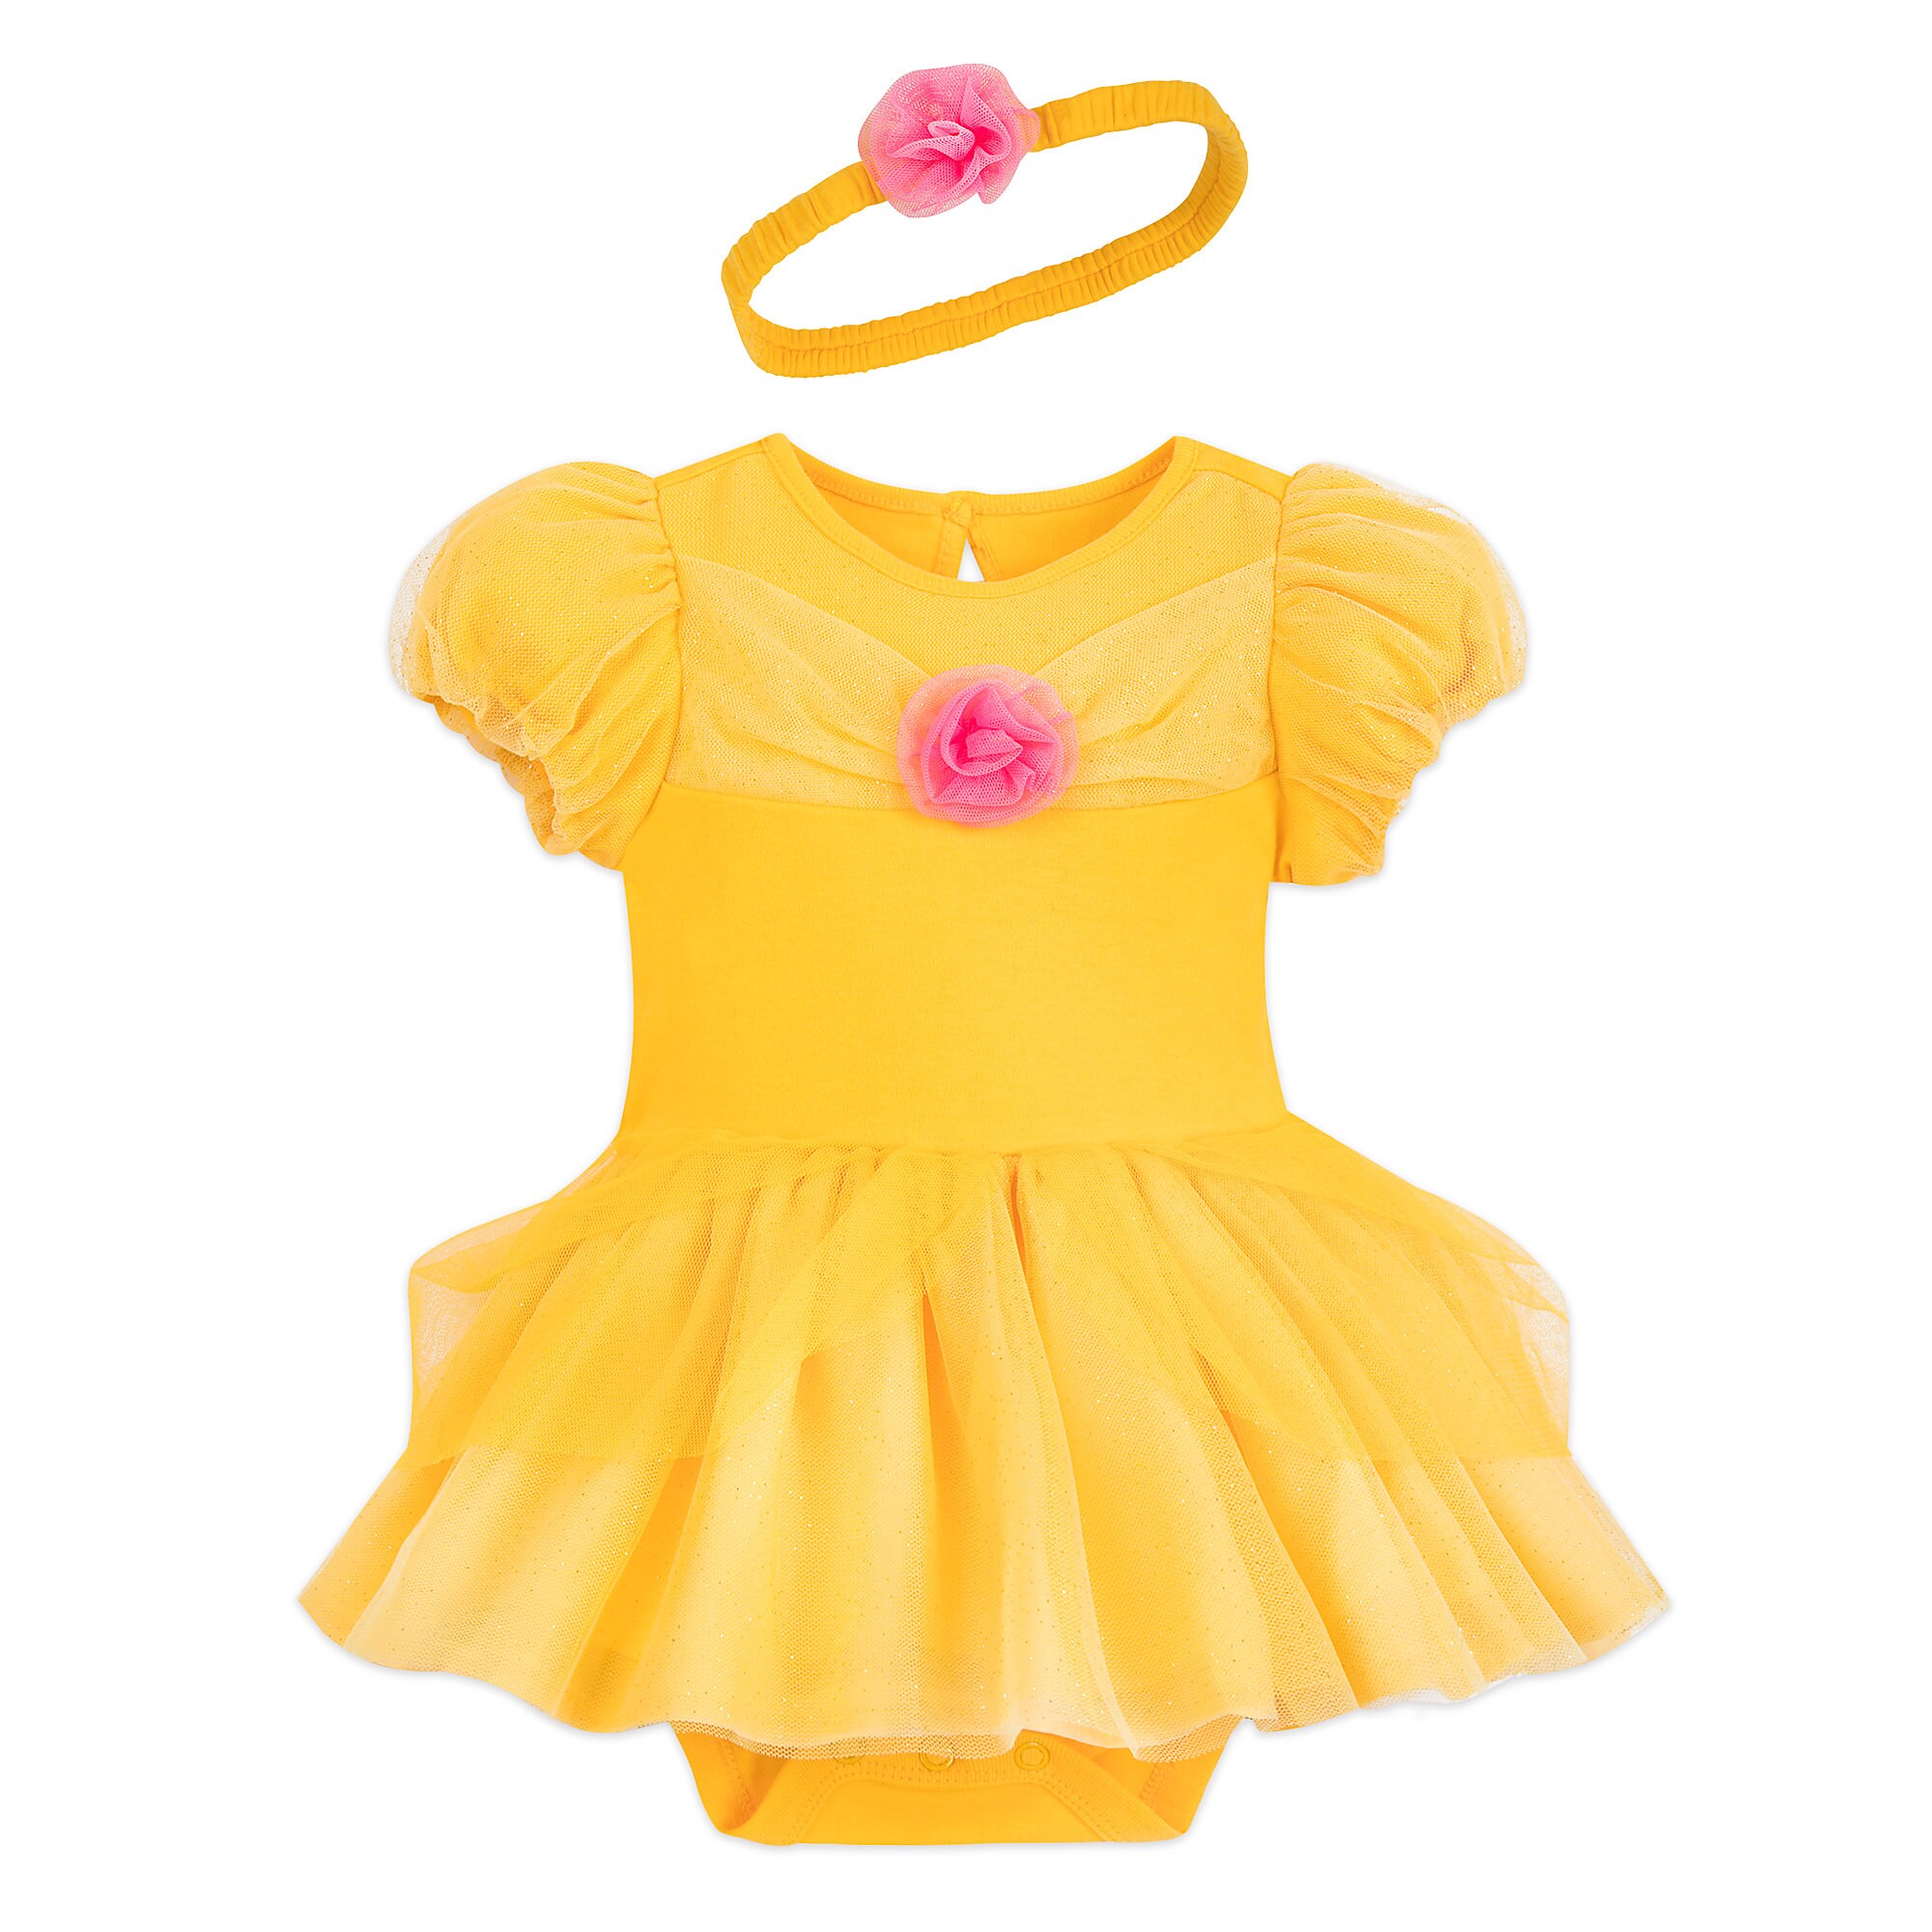 Belle Costume Bodysuit for Baby